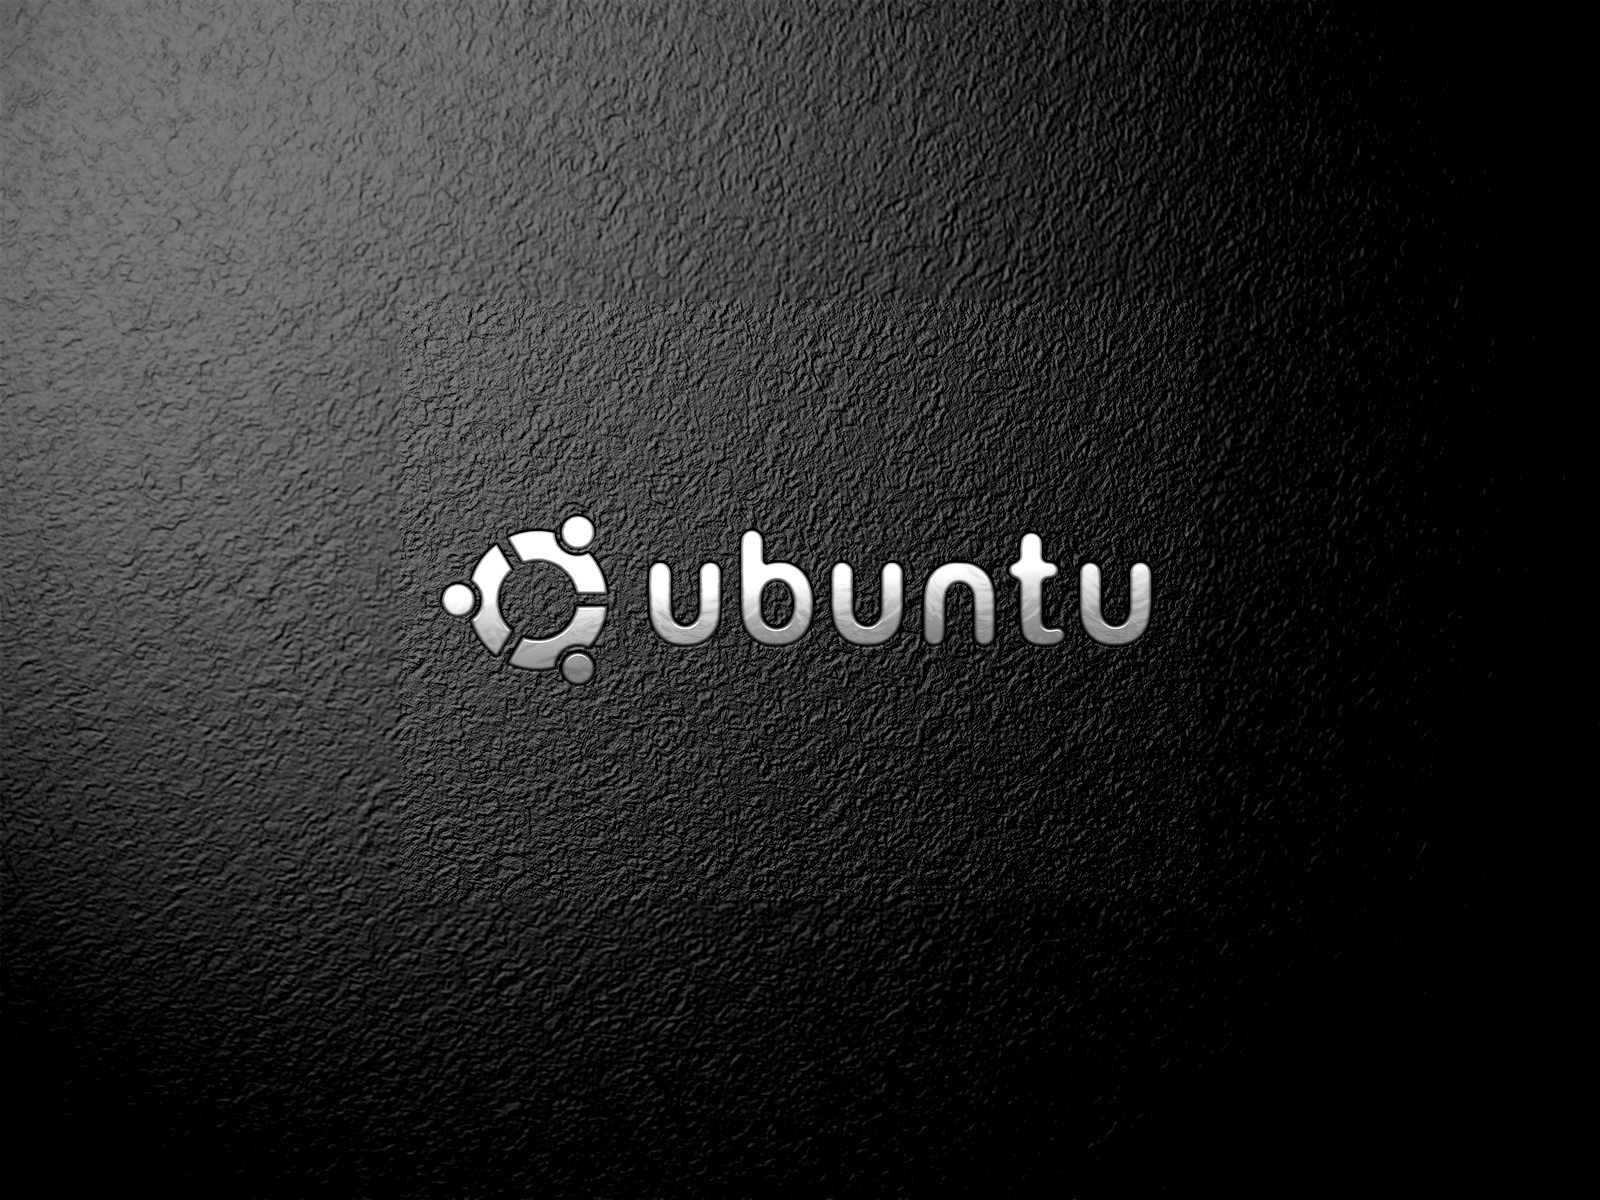 Download wallpapers for ubuntu 3